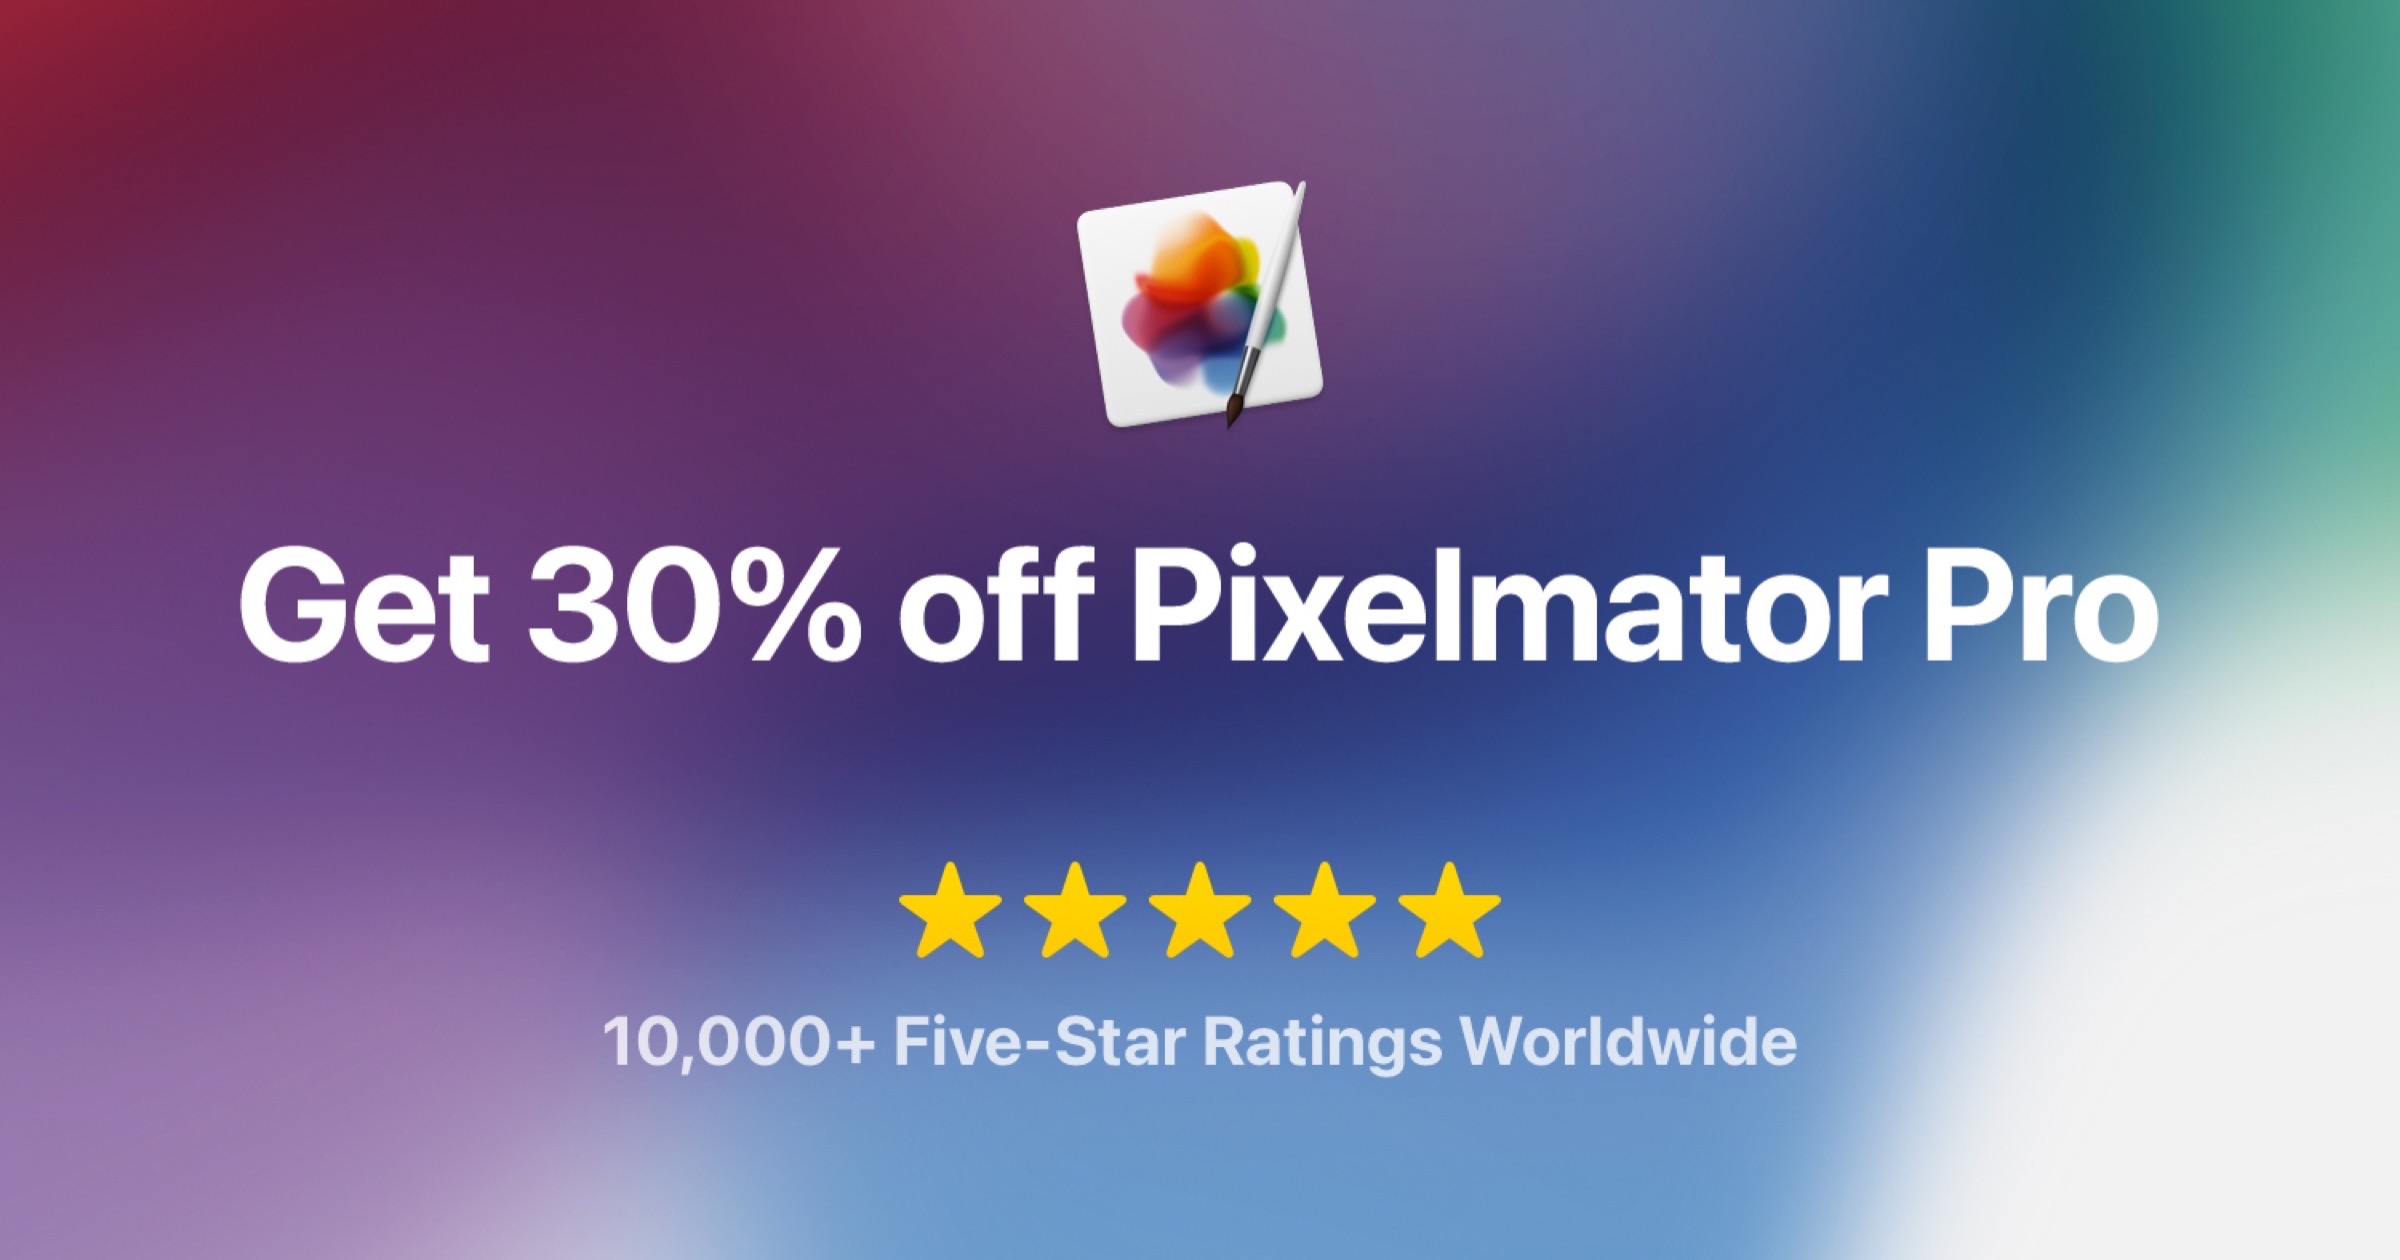 Pixelmator Pro a la venta después de alcanzar las 10,000 reseñas de cinco estrellas